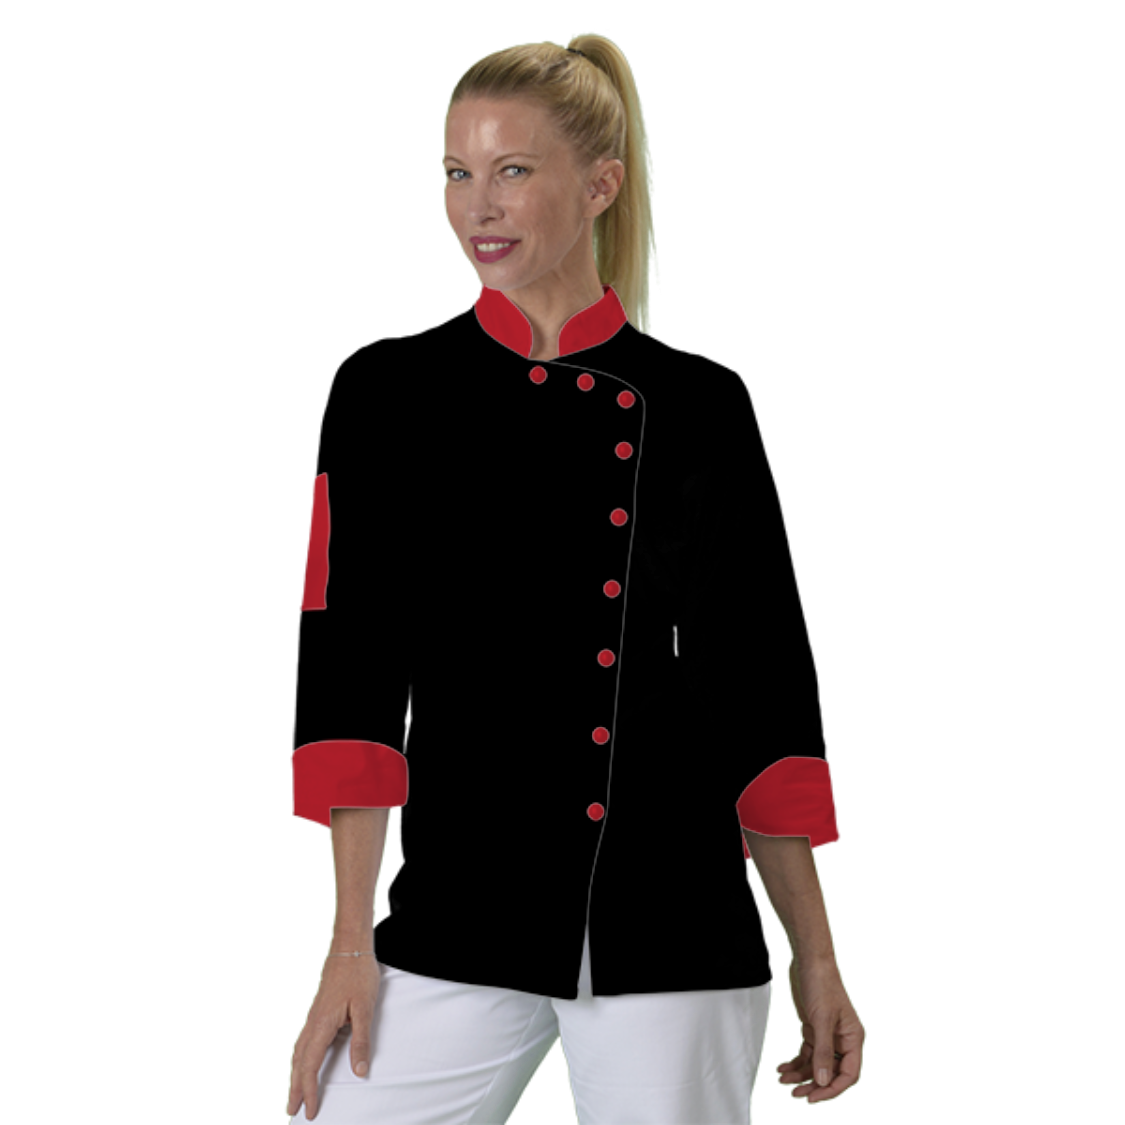 veste-de-cuisine-femme-a-personnaliser acheté - par Cyril - le 08-11-2020